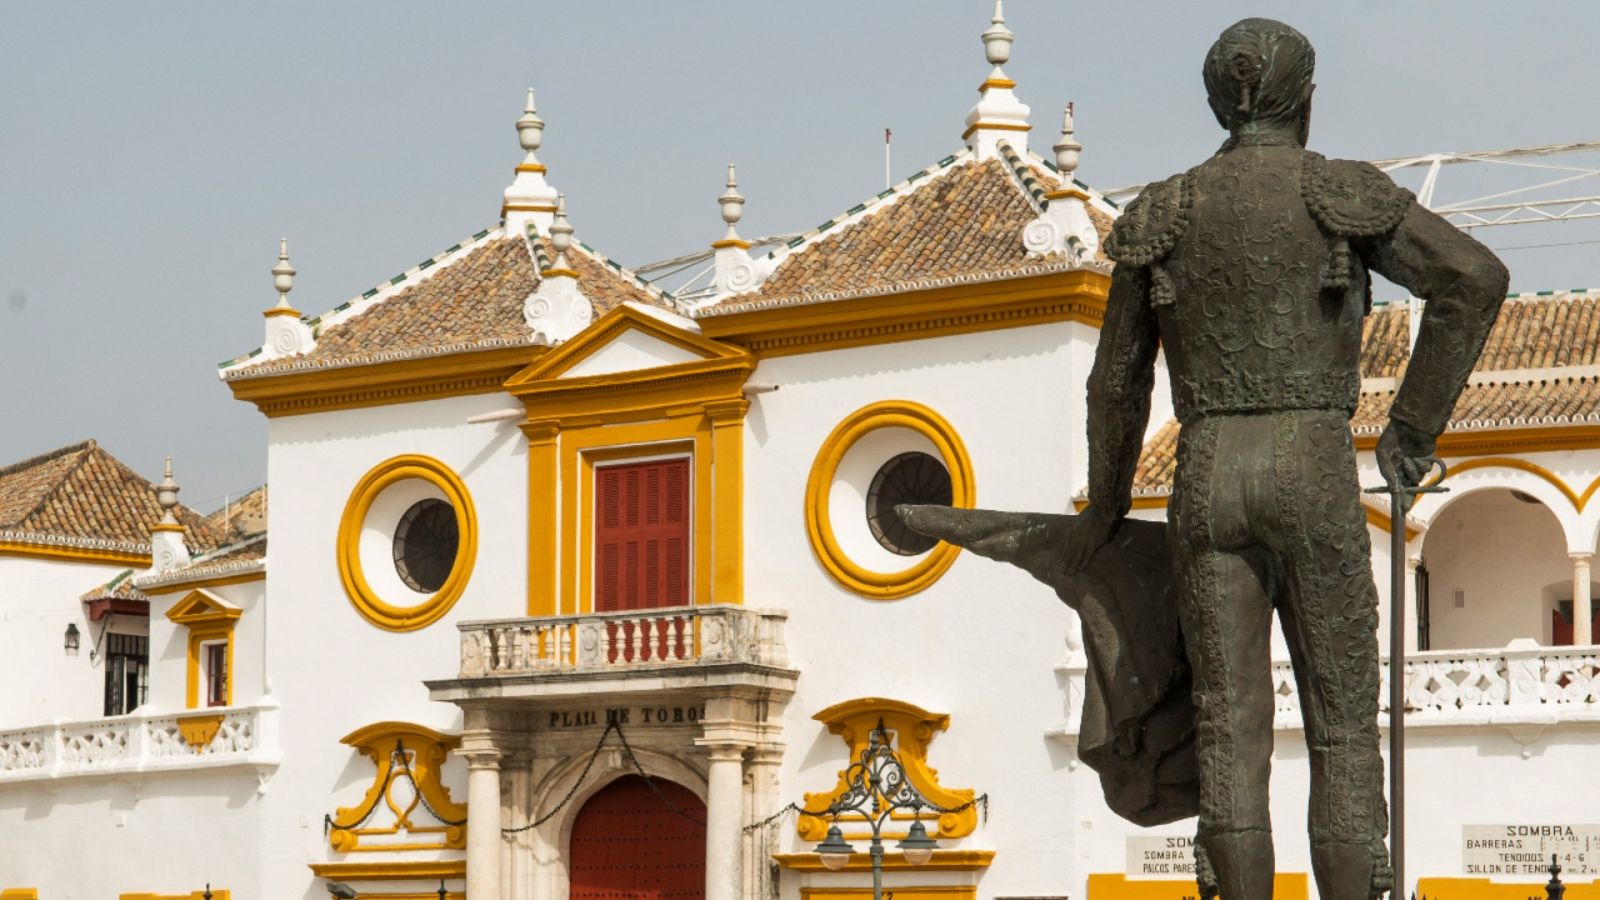 Una imagen del exterior de la plaza de toros de la Real Maestranza de Sevilla.